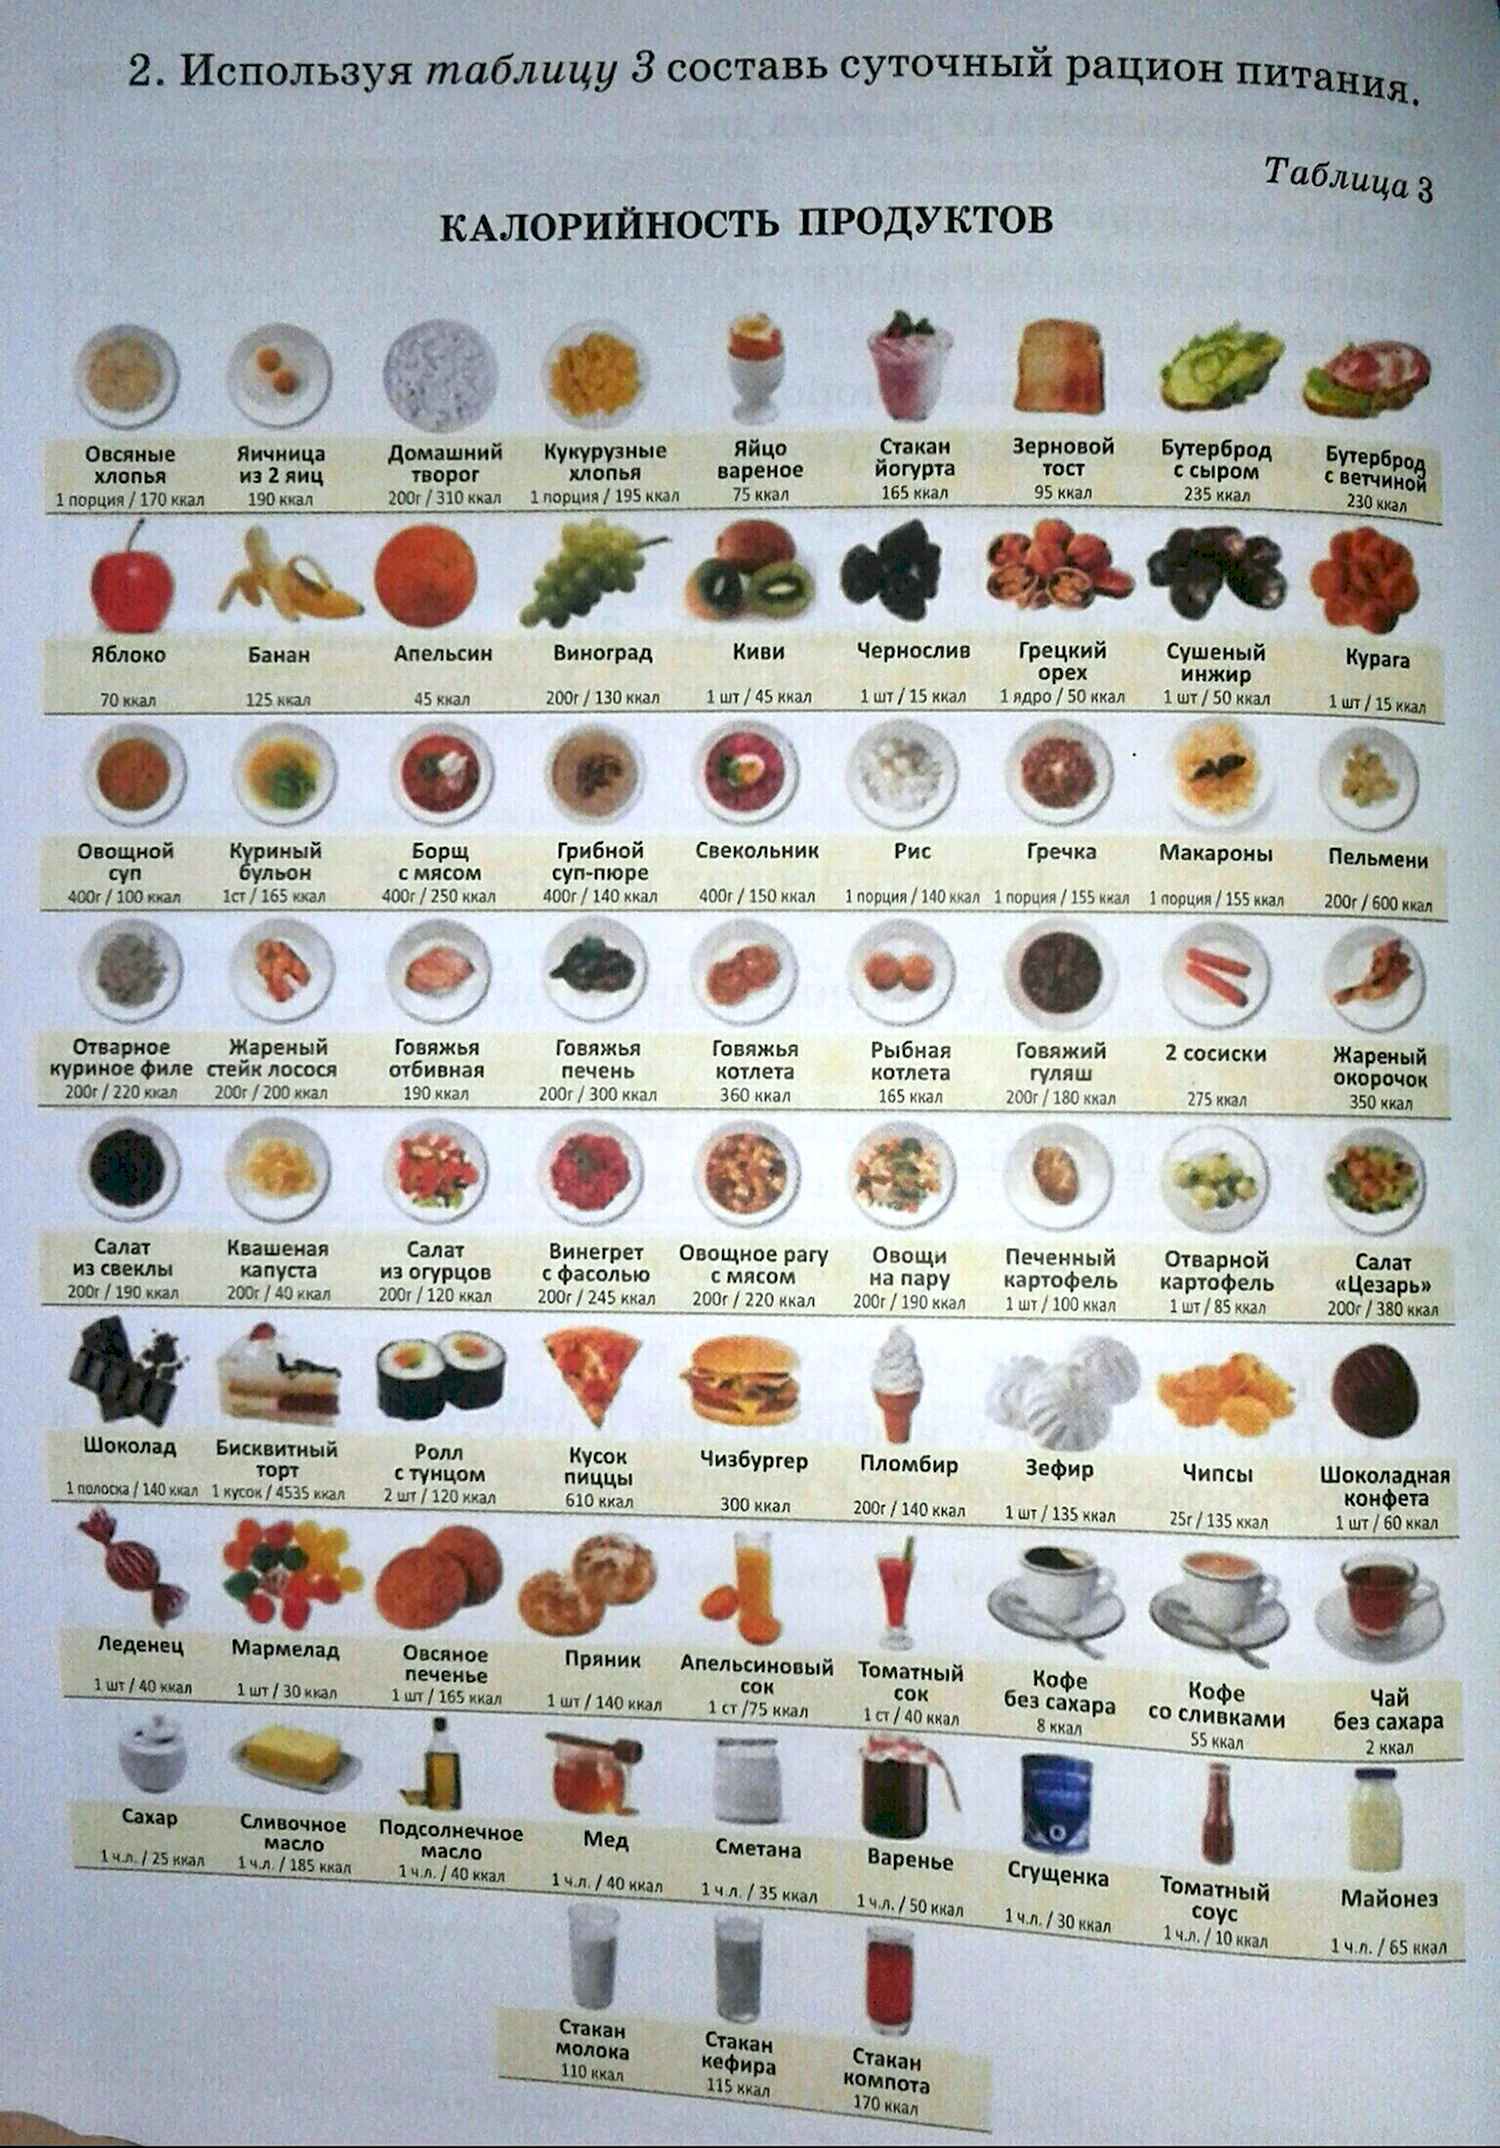 Таблицы калорийности продуктов | Диеты на портале бородино-молодежка.рф (Узбекистан) (ID#)